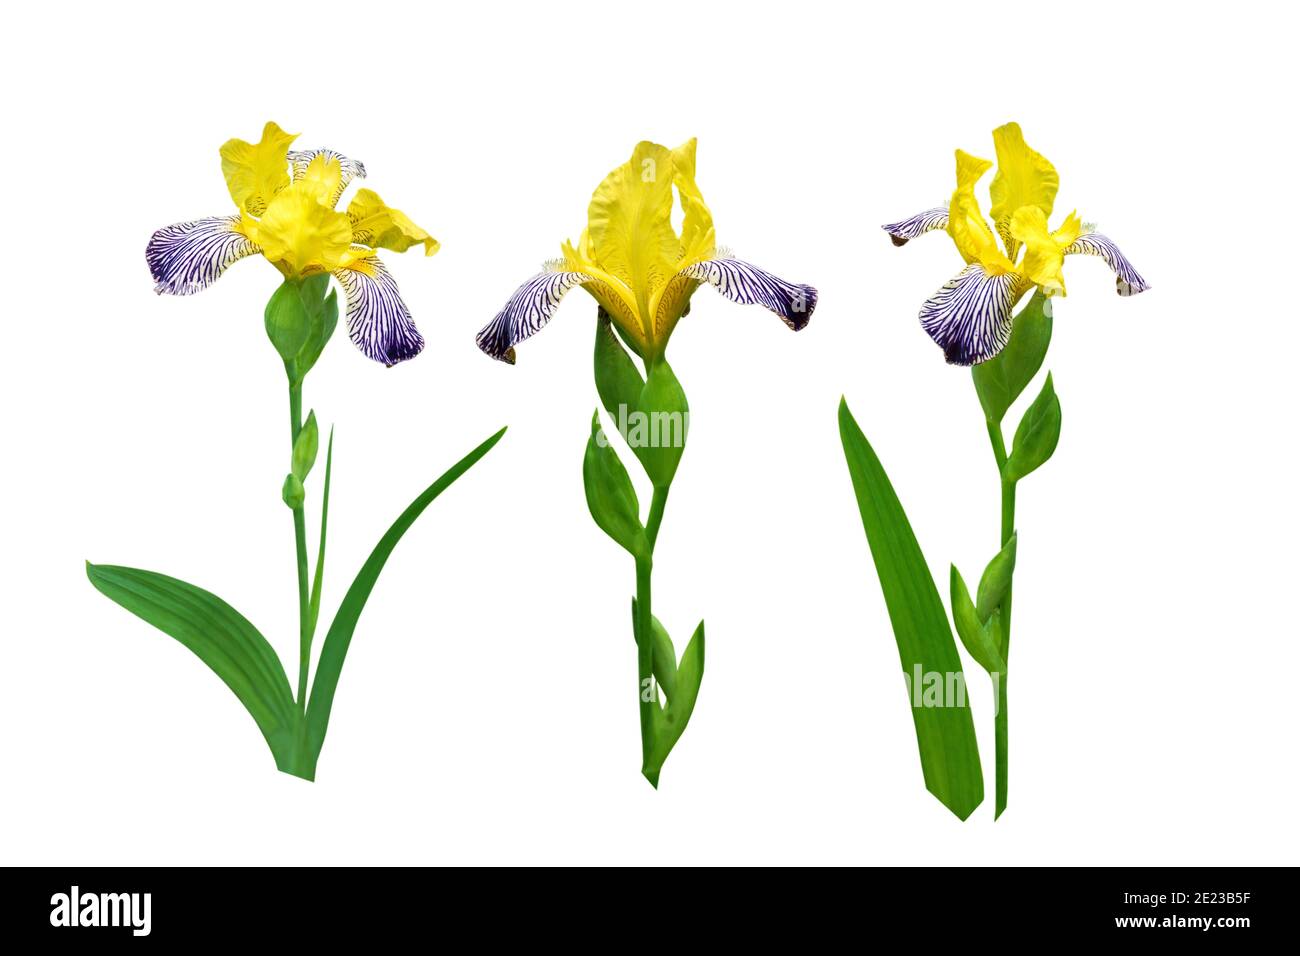 Ensemble de fleurs et de feuilles de iris rayées jaune et violet foncé isolé sur blanc Banque D'Images